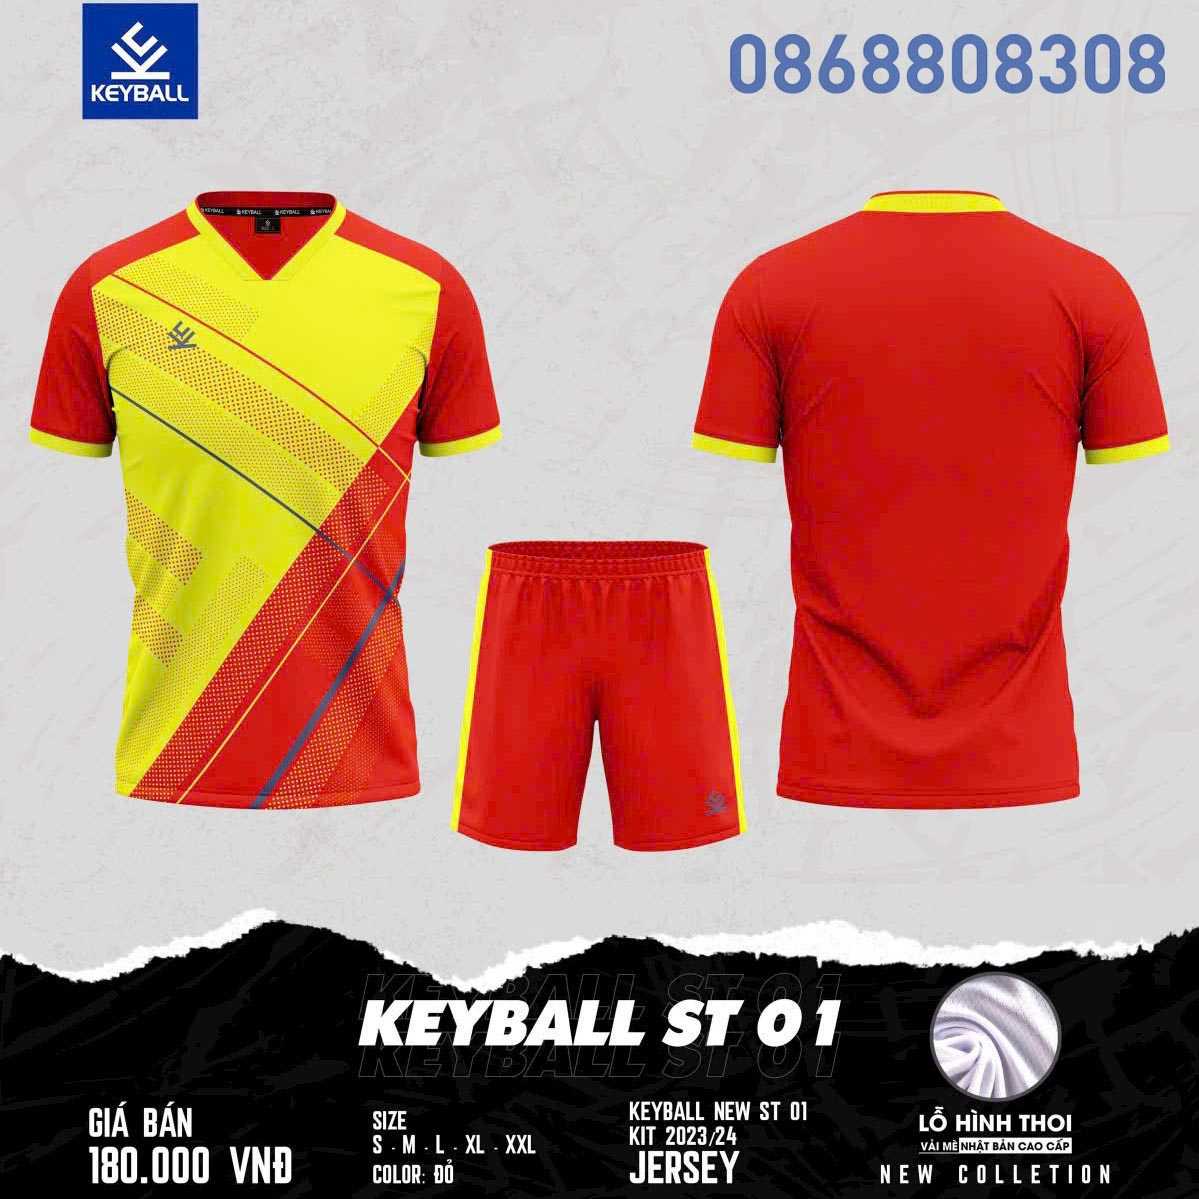 Bộ quần áo bóng đá phủi thiết kế chính hãng keyball st 01 vải mè thoi nhiều màu xanh trời